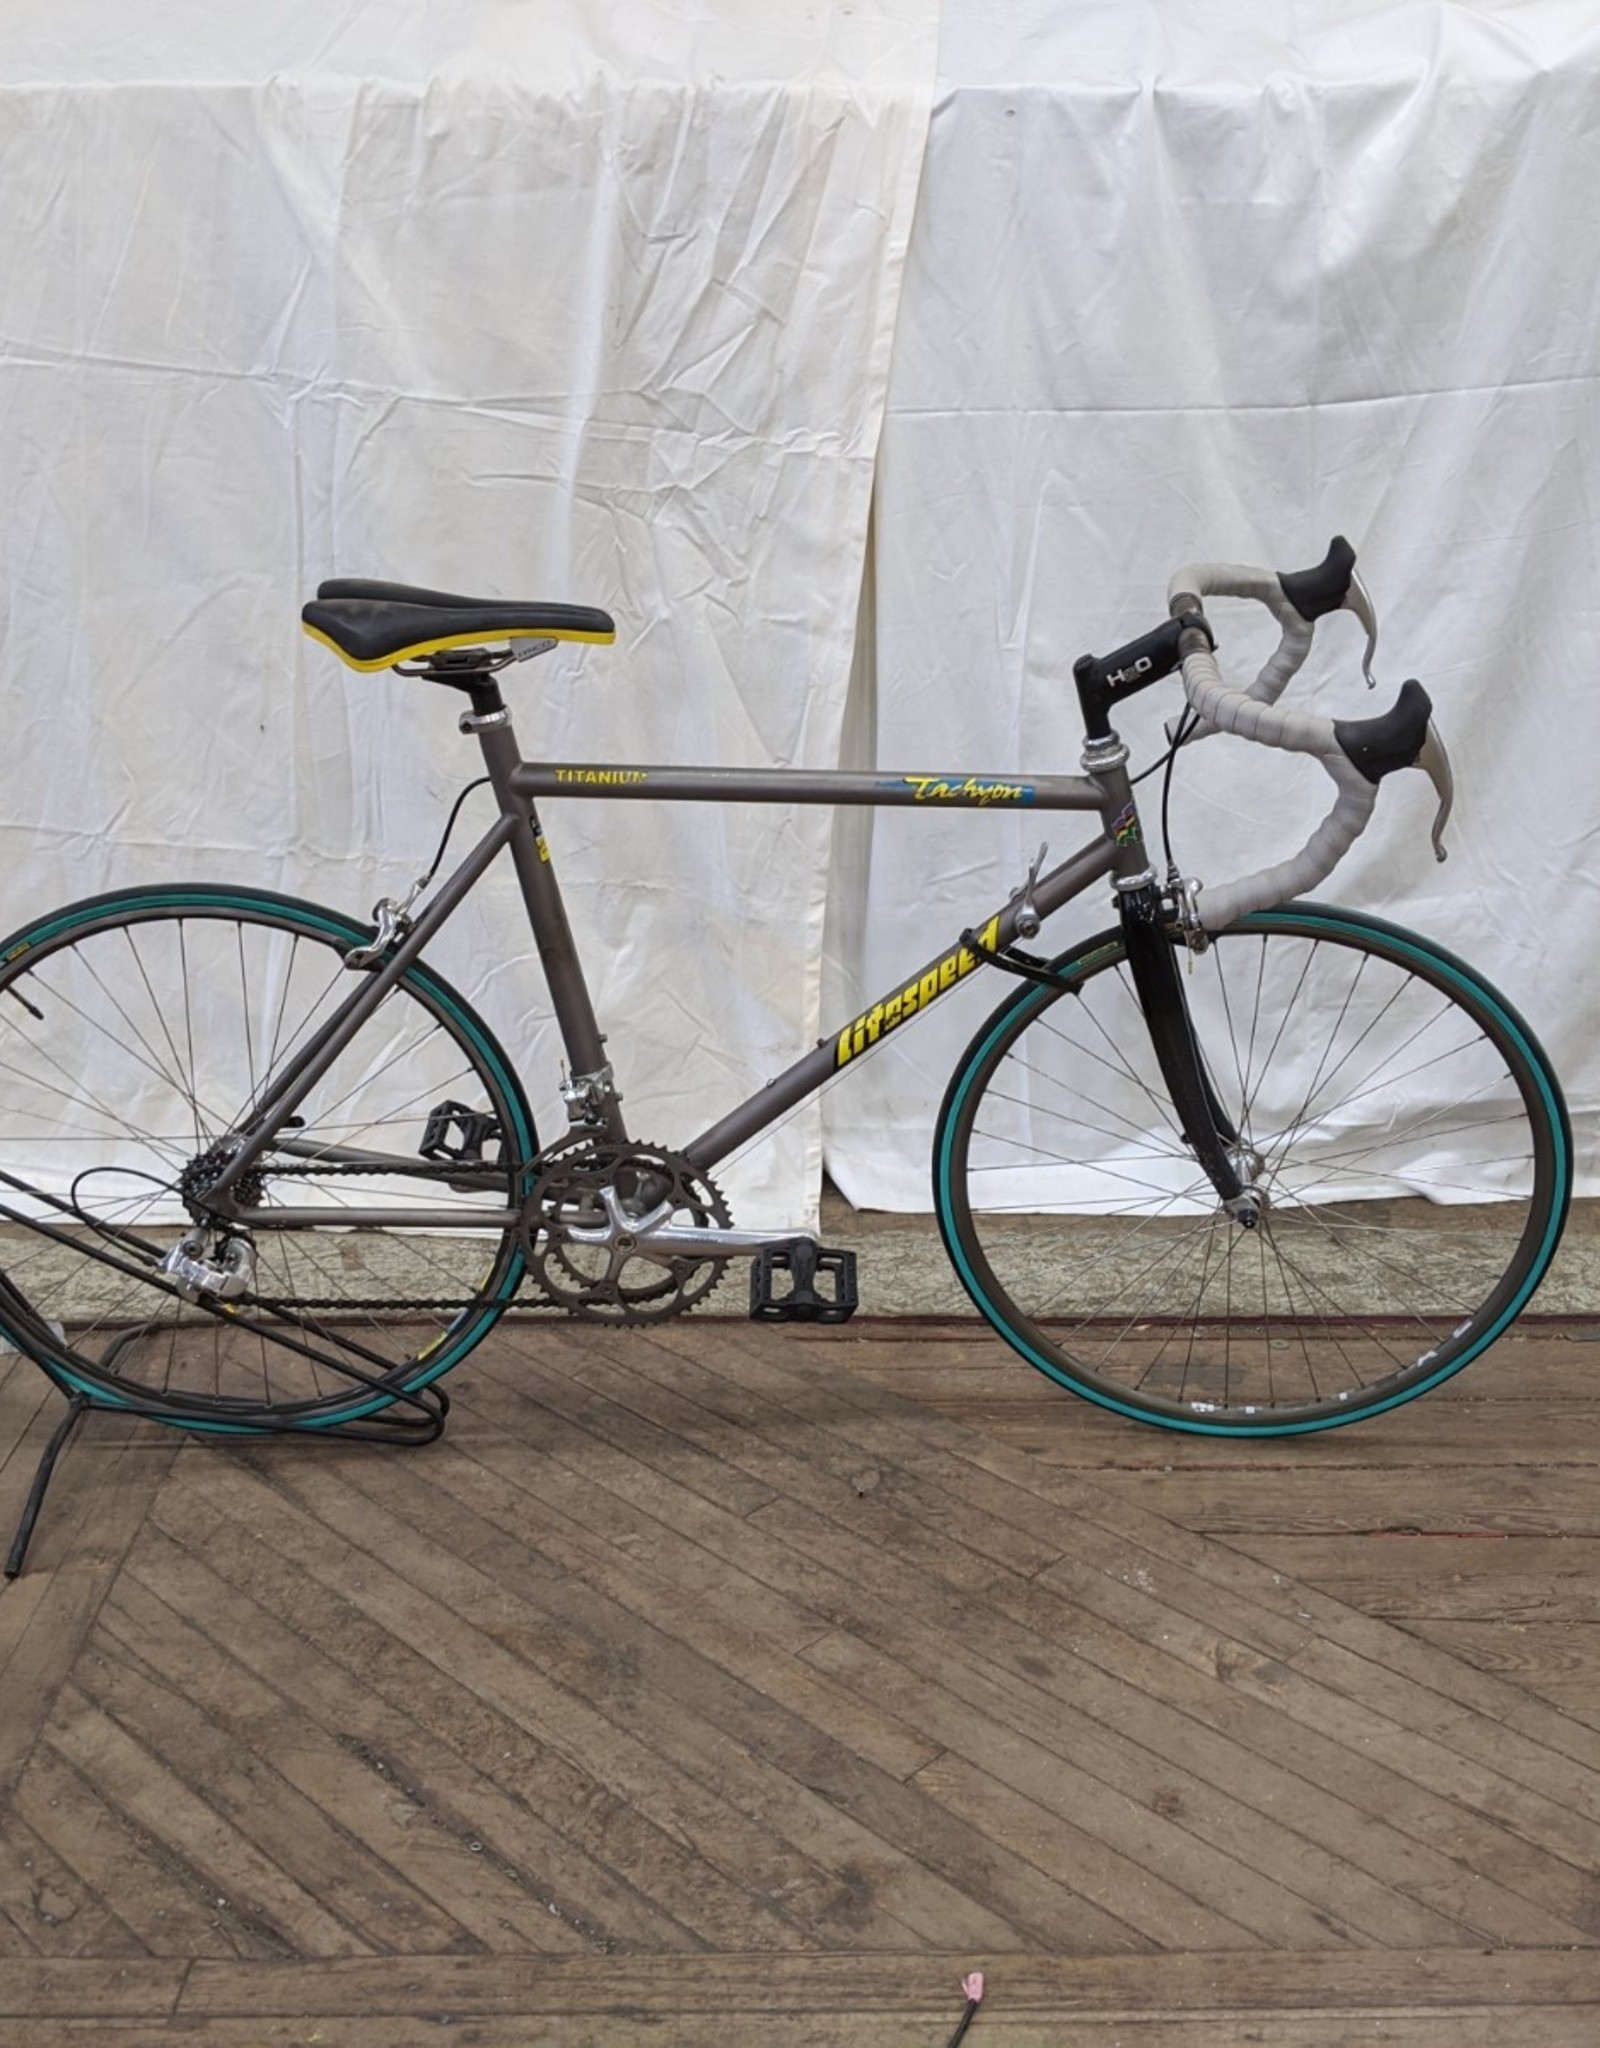 51cm bike